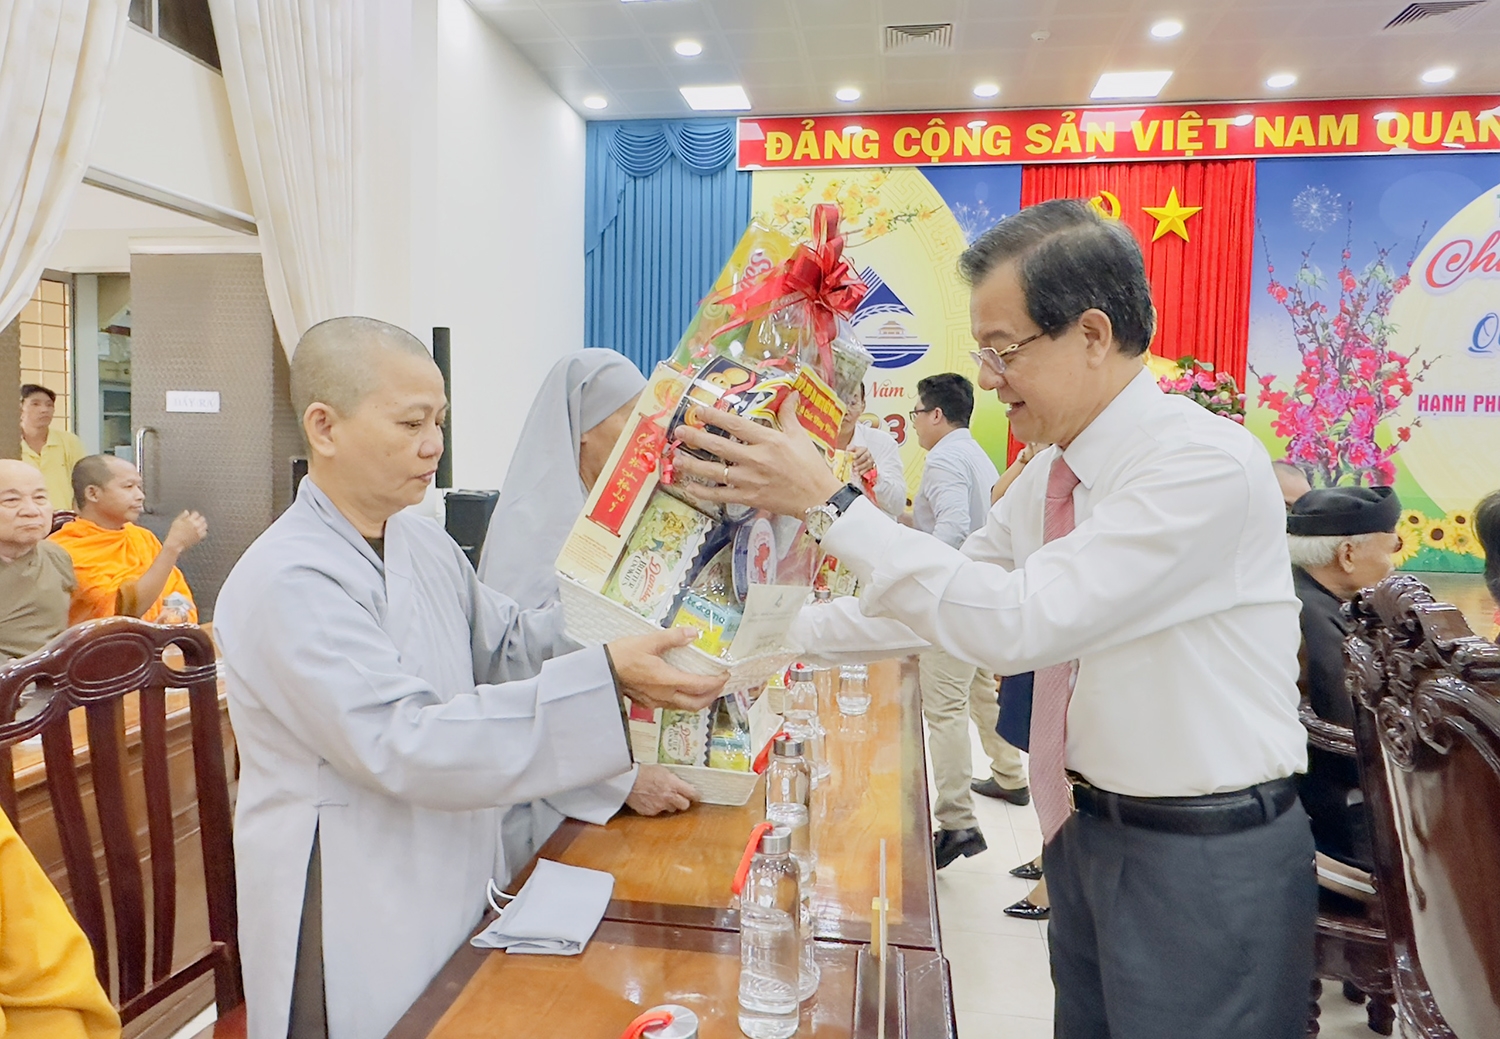 Ông Lê Hồng Quang - Bí thư Tỉnh ủy An Giang trao quà đến các vị nhân sĩ, trí thức, tôn giáo, dân tộc, Người có uy tín